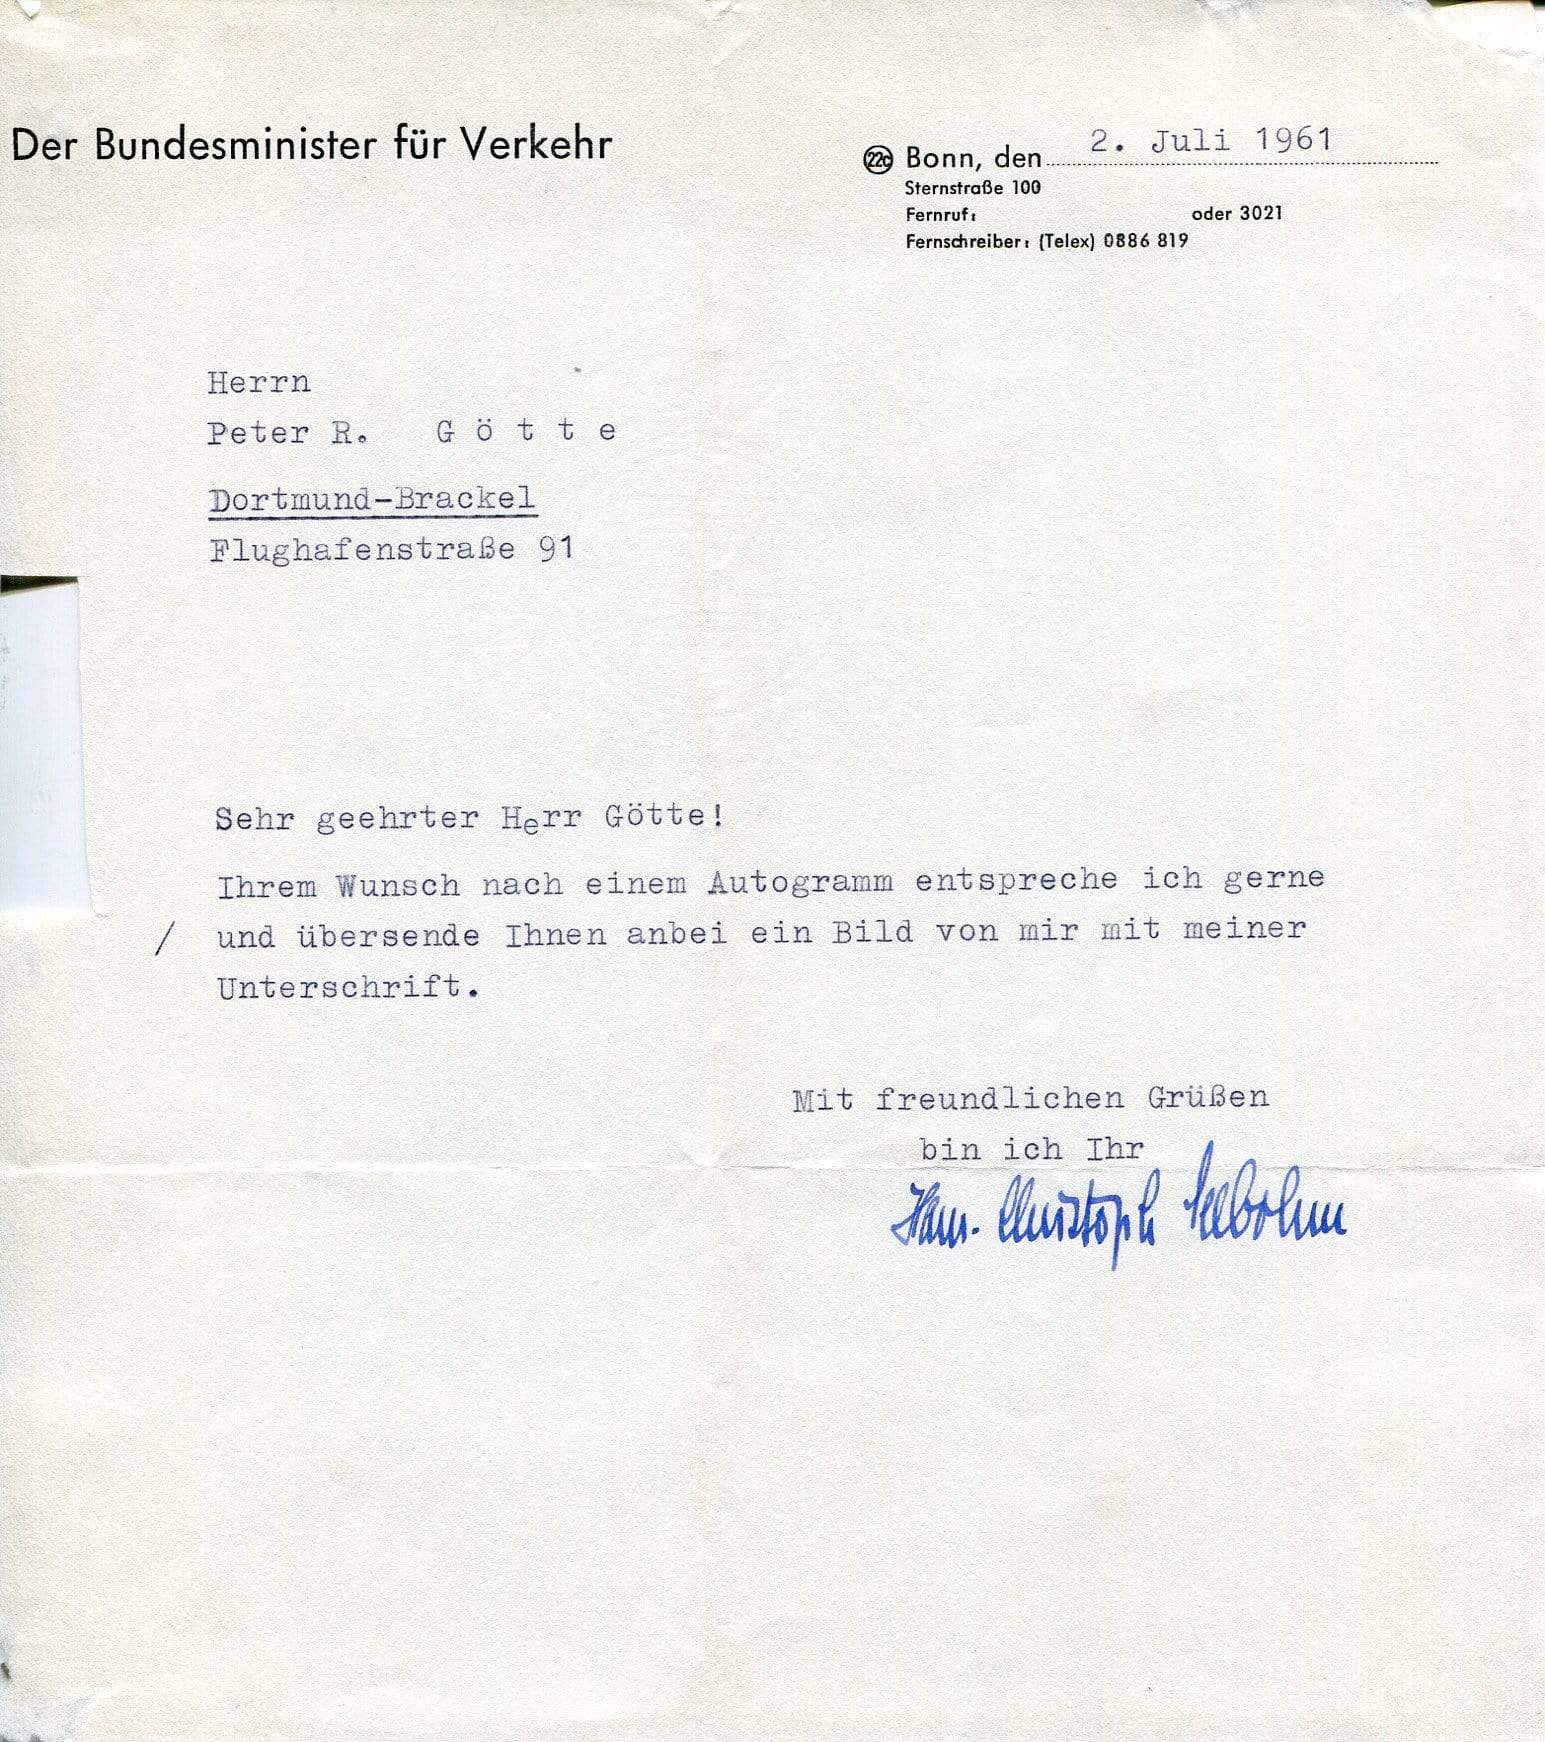 Seebohm, Hans-Christoph autograph